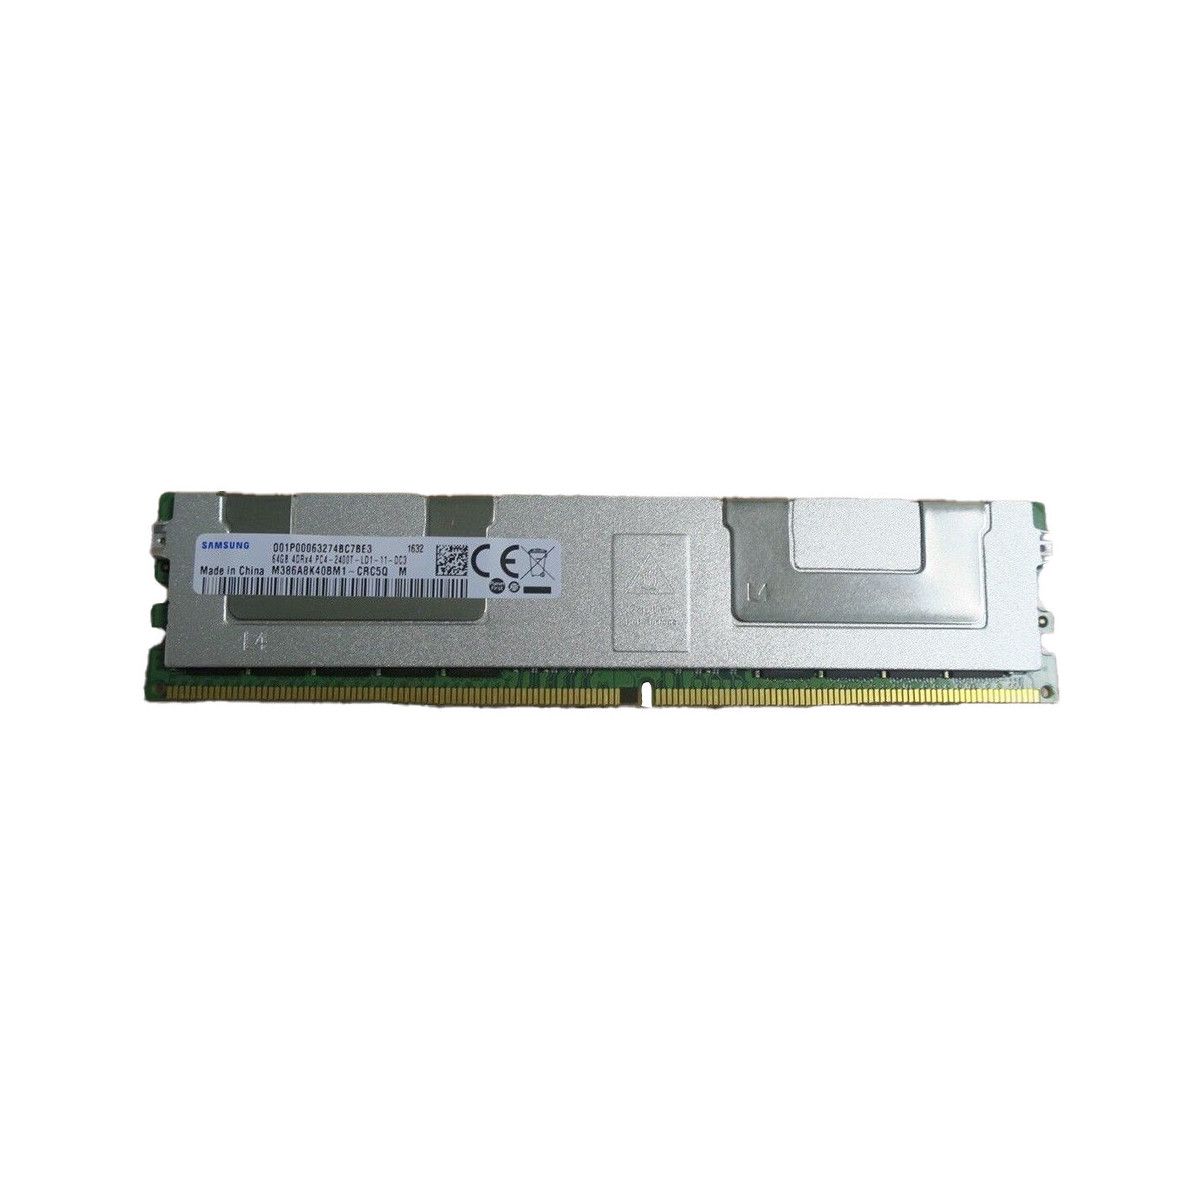 SNP29GM8C/64G-MS - Memstar 1x 64GB DDR4-2400 LRDIMM PC4-19200T-L